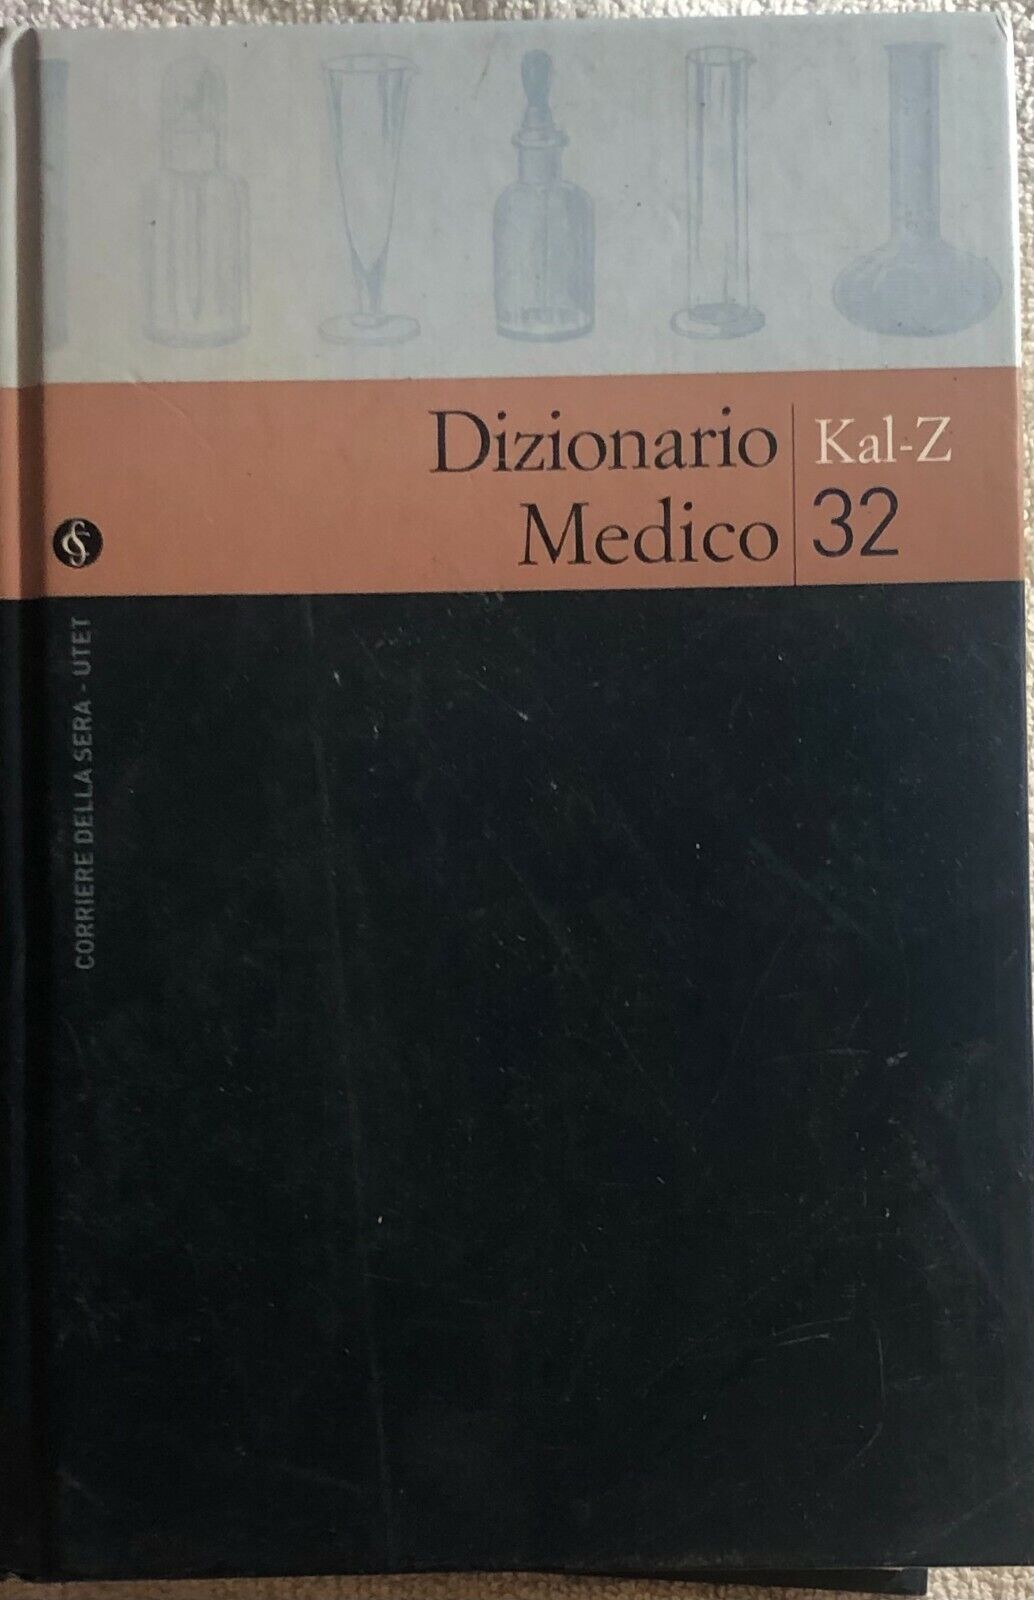 Dizionario medico n. 32 Kal-Z di Aa.vv.,  2004,  Corriere Della Sera - Utet